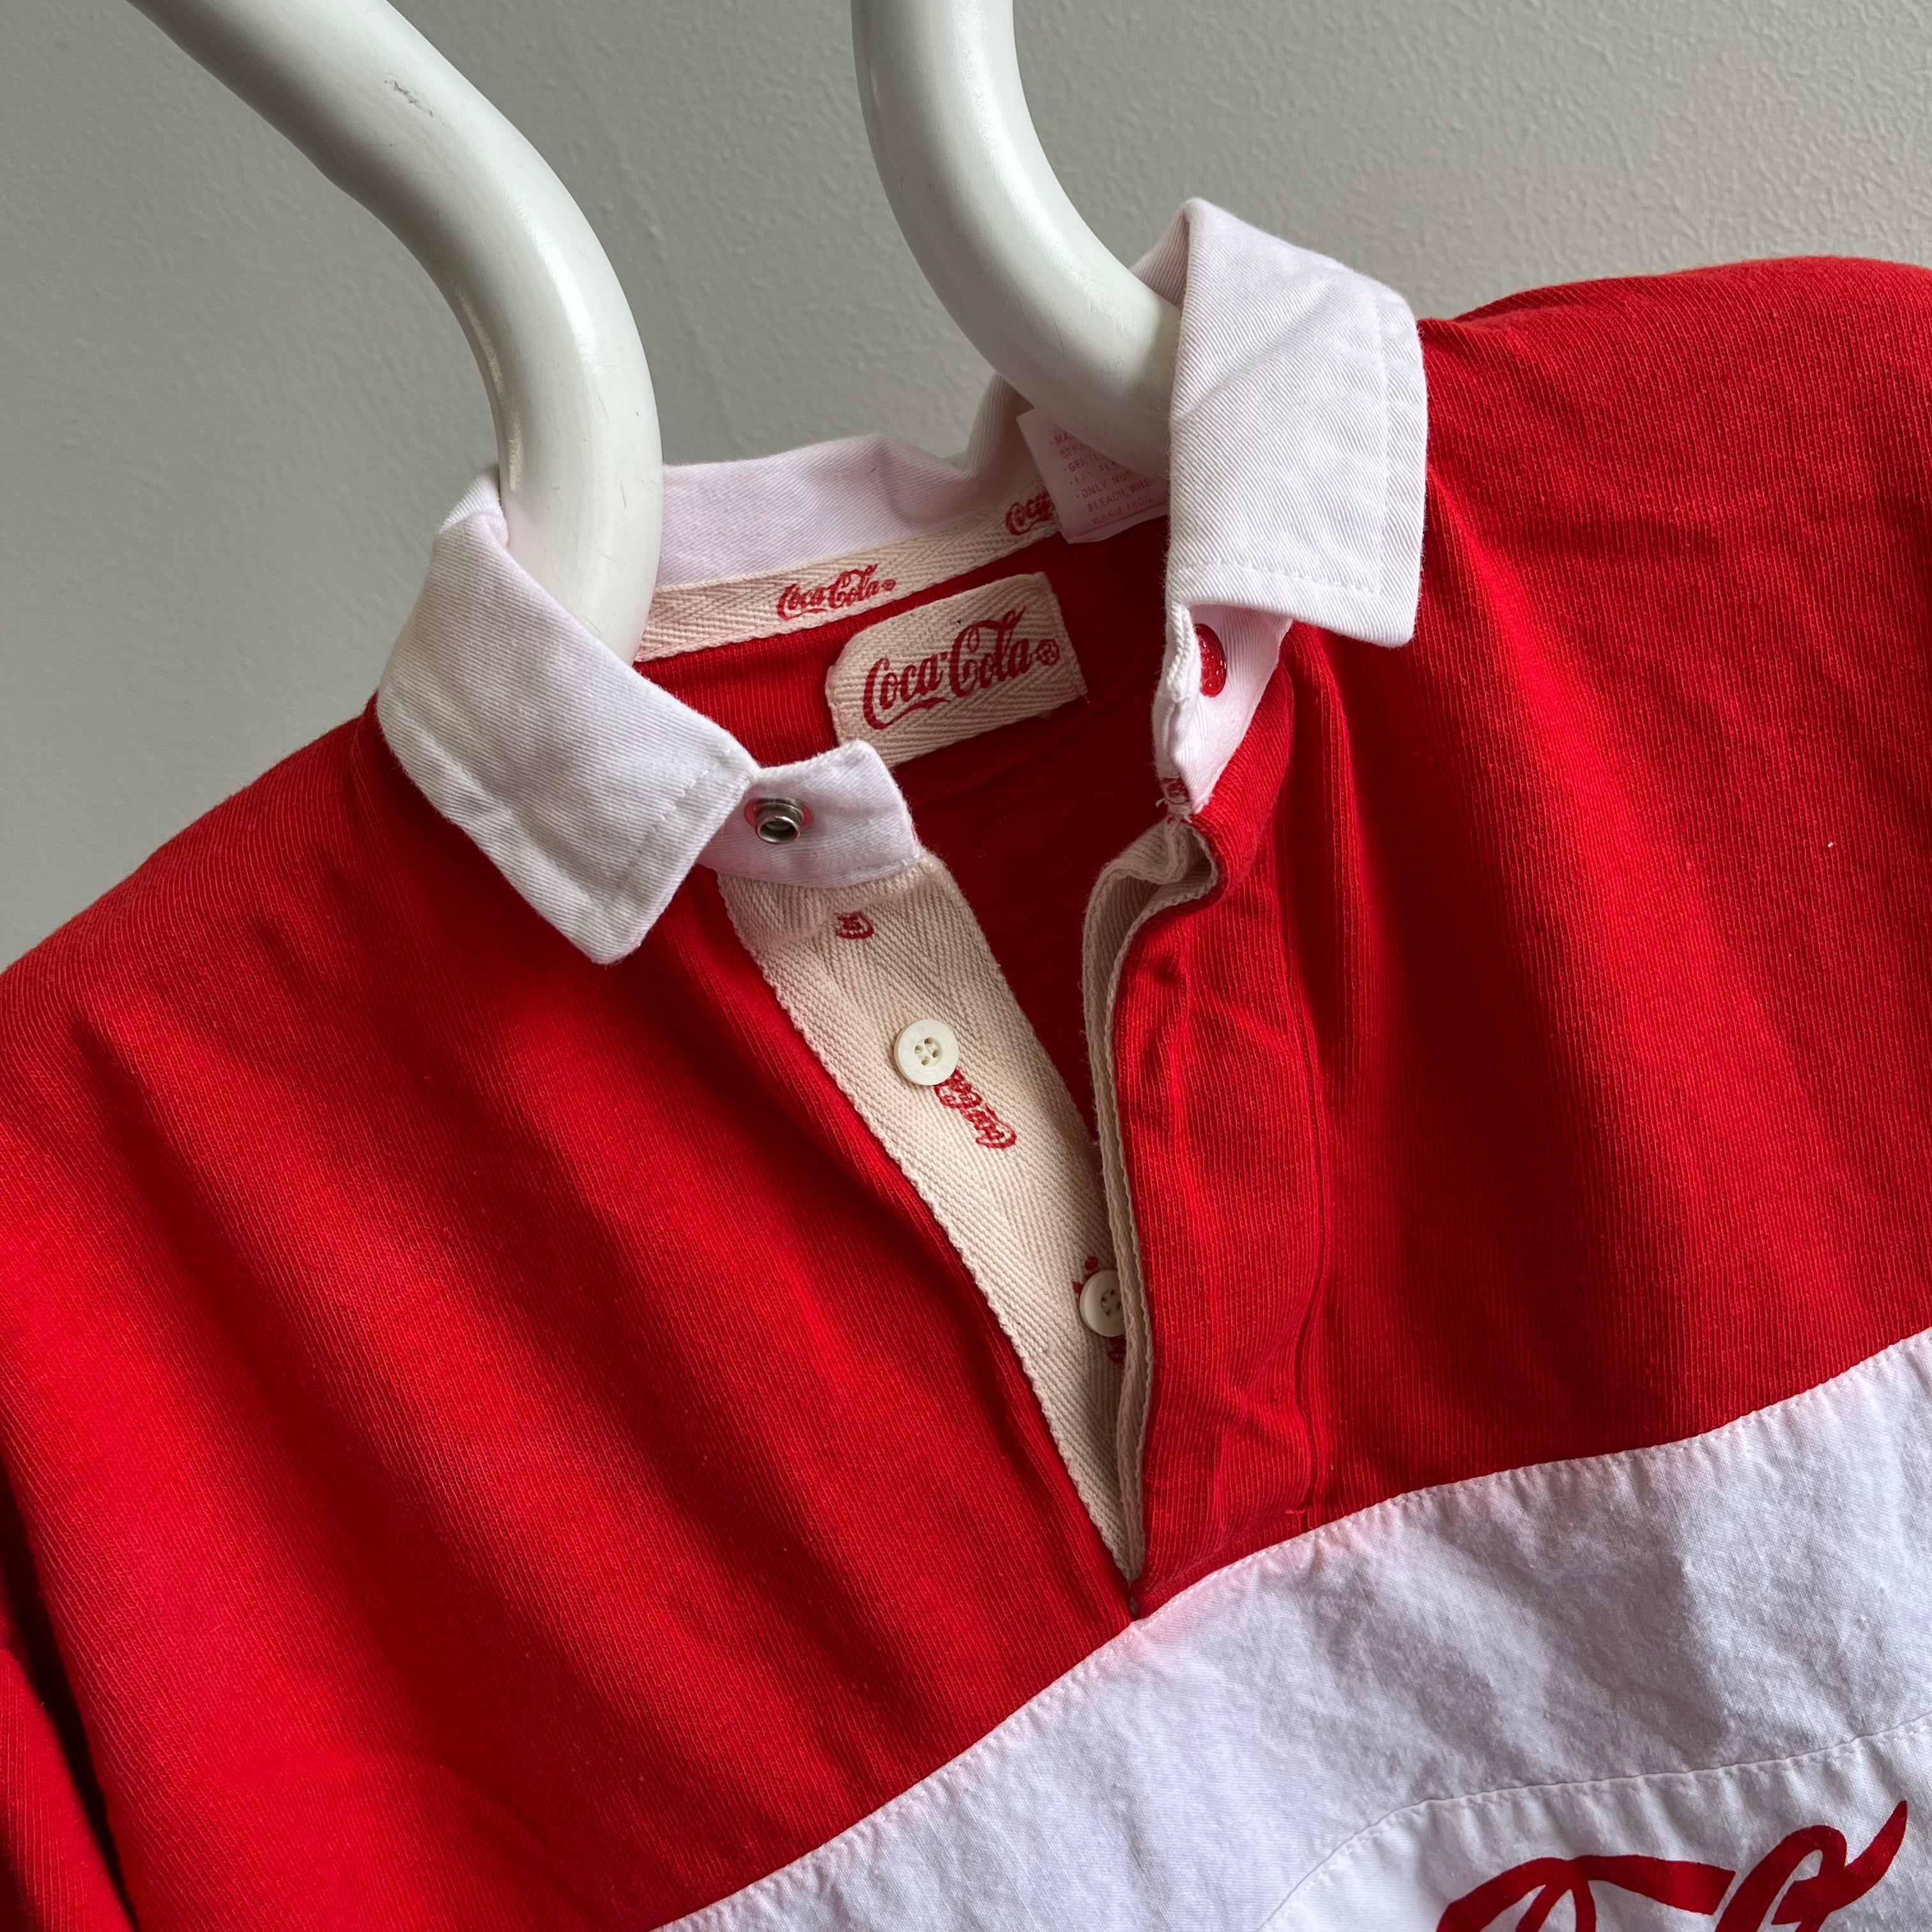 Chemise de style rugby à blocs de couleurs Coke des années 1990 (plus légère)